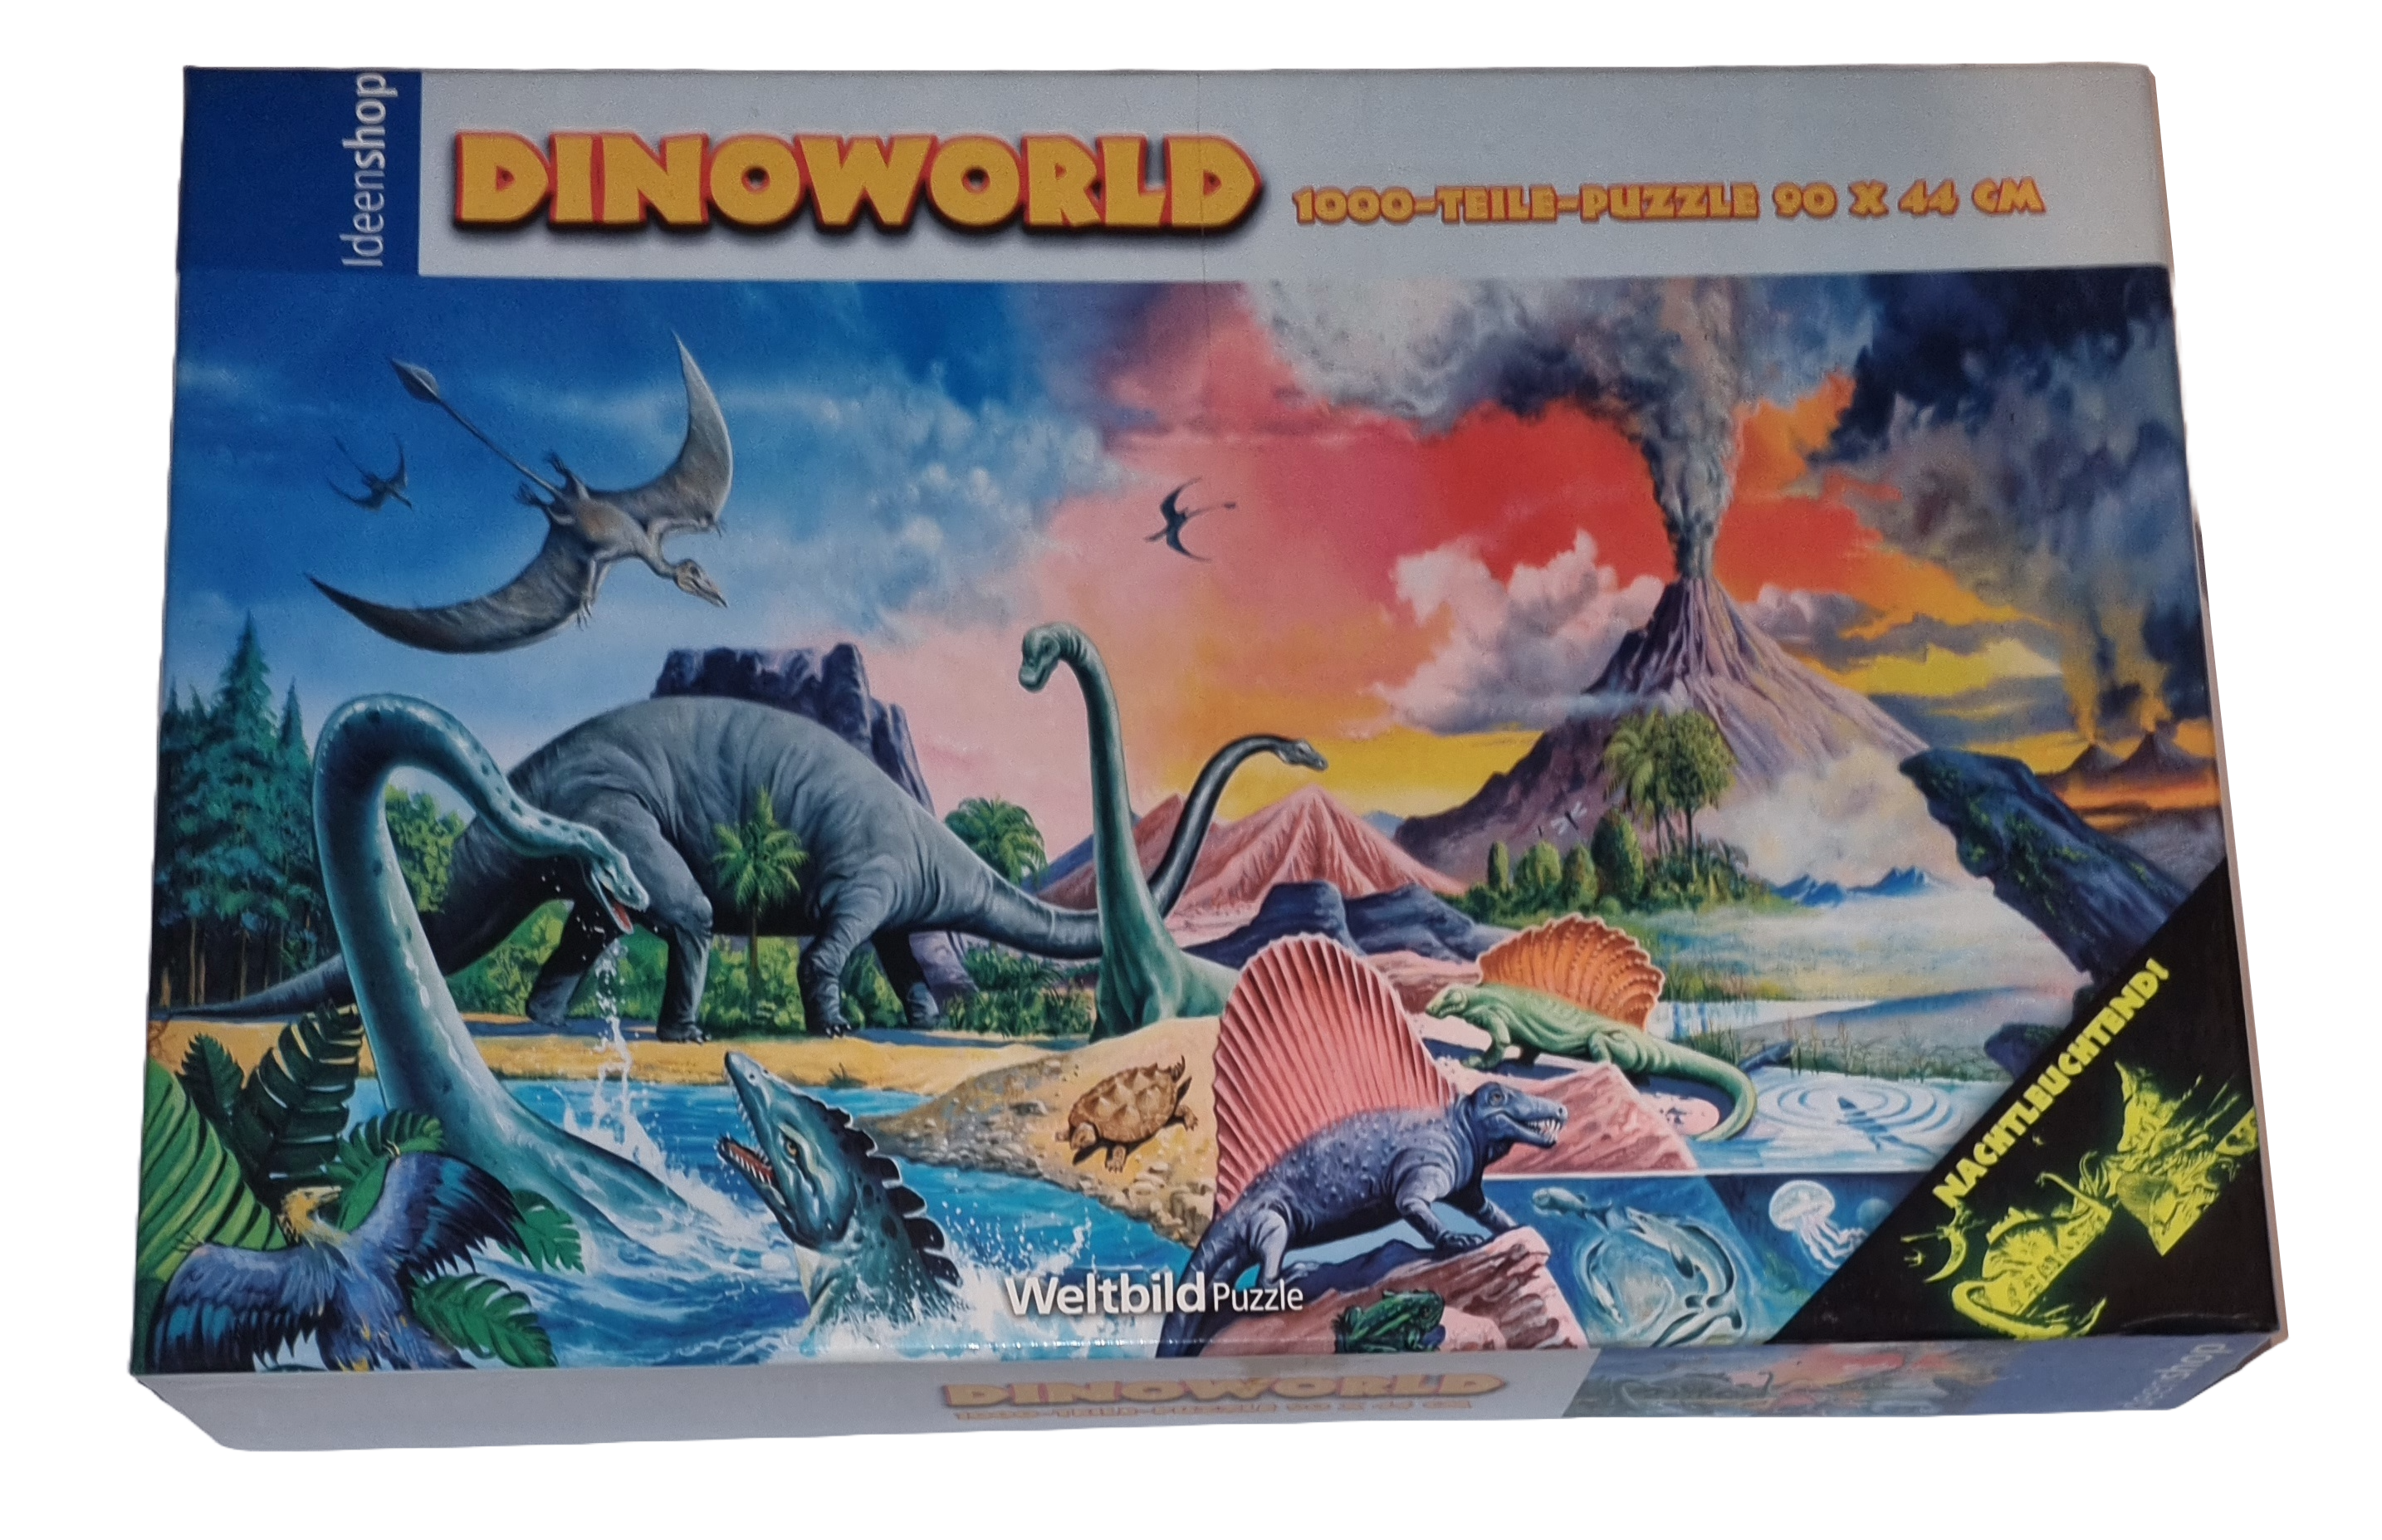 Weltbild Ideenshop Dinoworld Puzzle 1000 Teile Nachtleuchtend 571783